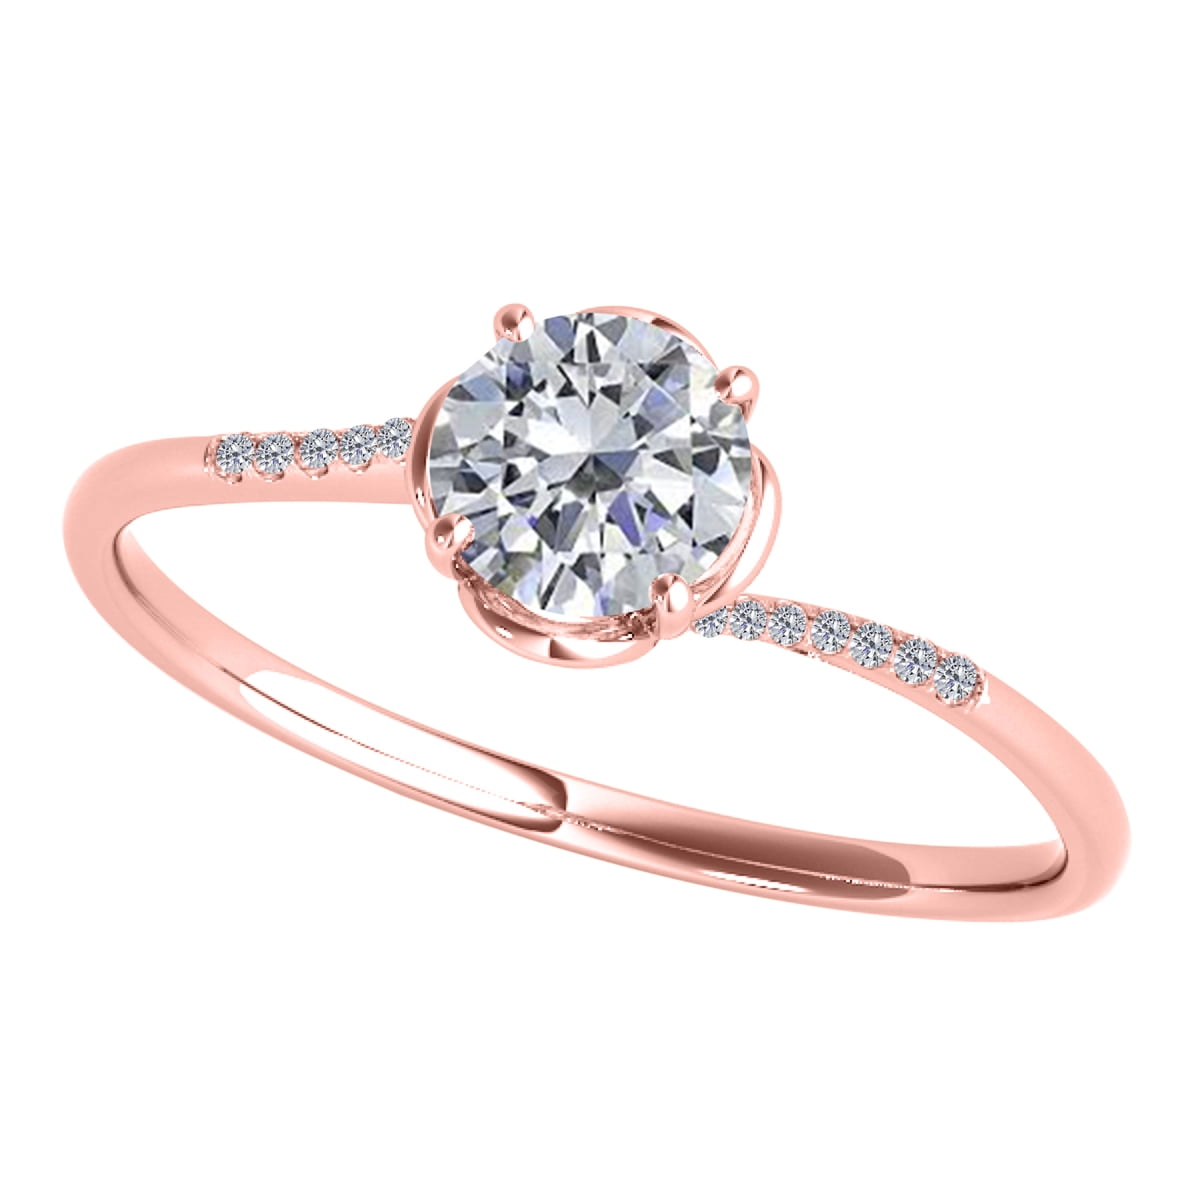 Buy Flower-shaped Diamond Ring 18K White Gold Online in India - Etsy